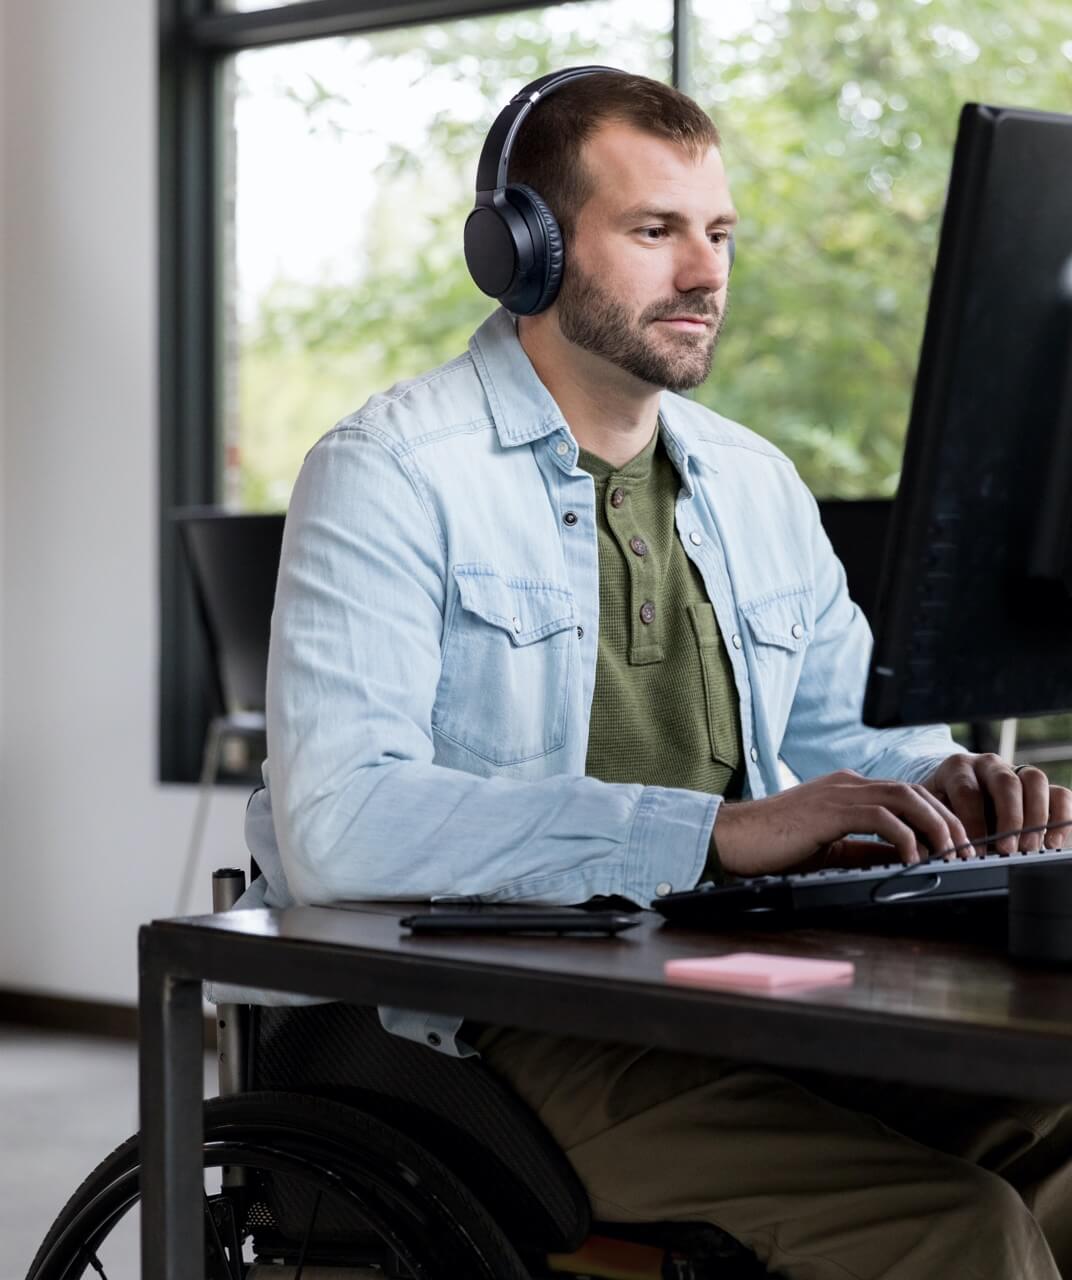 Hombre en silla de ruedas sentado trabajando con su ordenador. Tiene barba y lleva auriculares. Está escribiendo en el teclado y parece estar trabajando en una oficina.